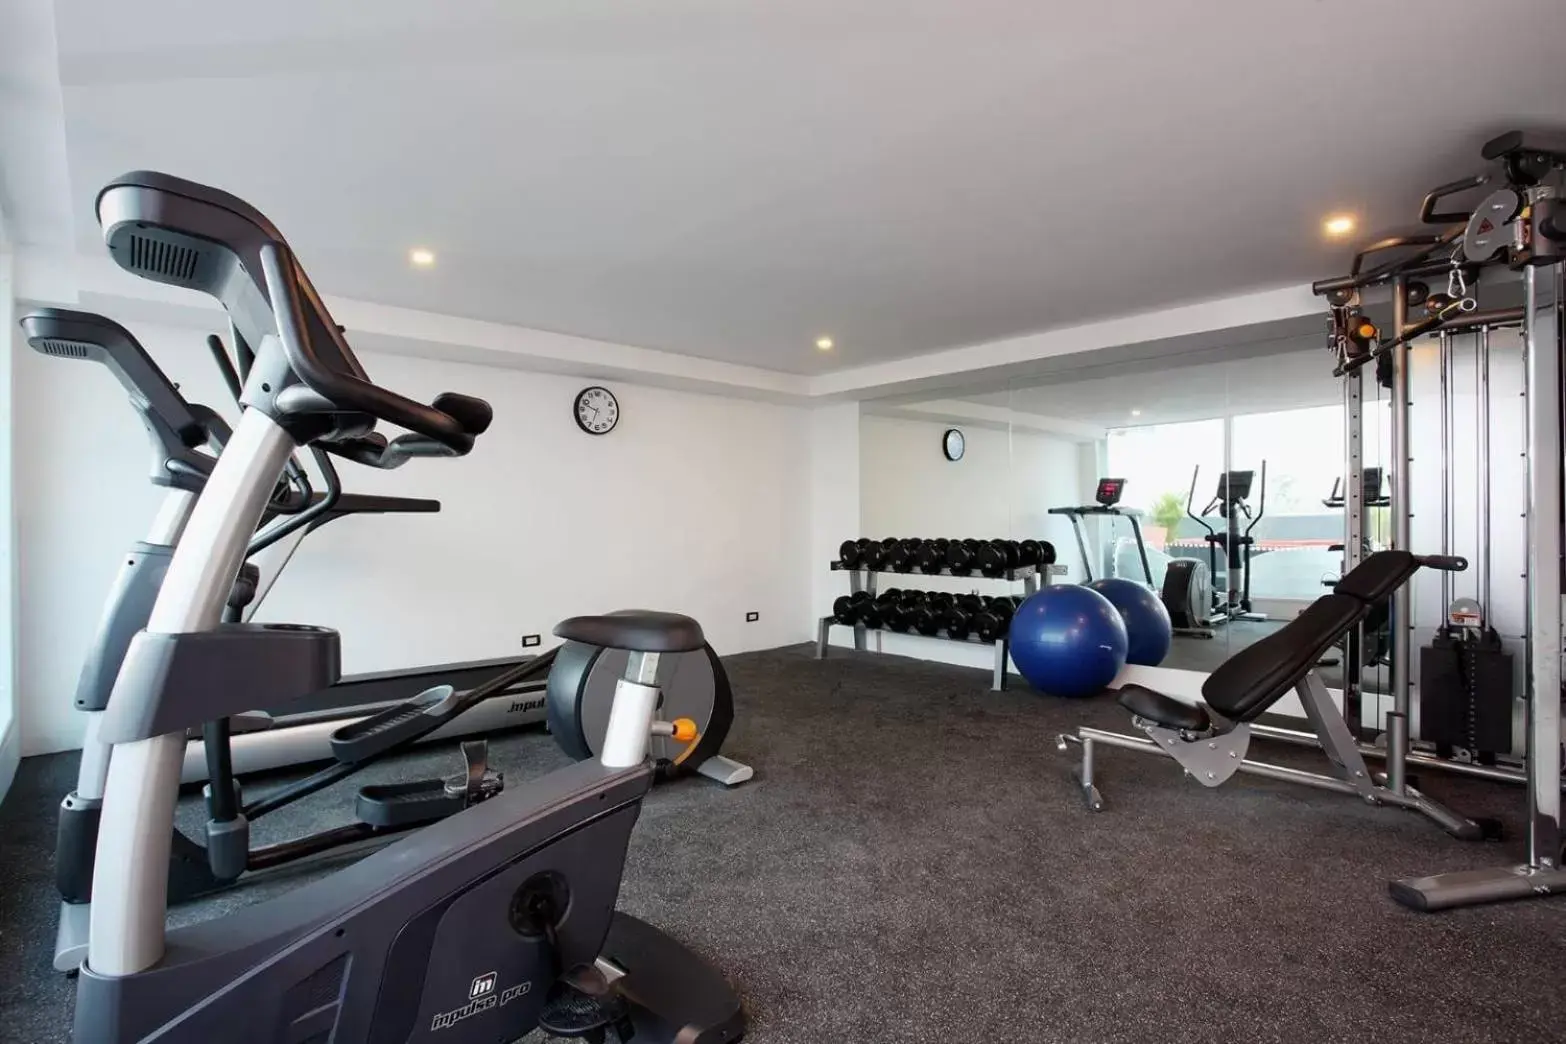 Fitness centre/facilities, Fitness Center/Facilities in De Mandarin Nova Express Hotel